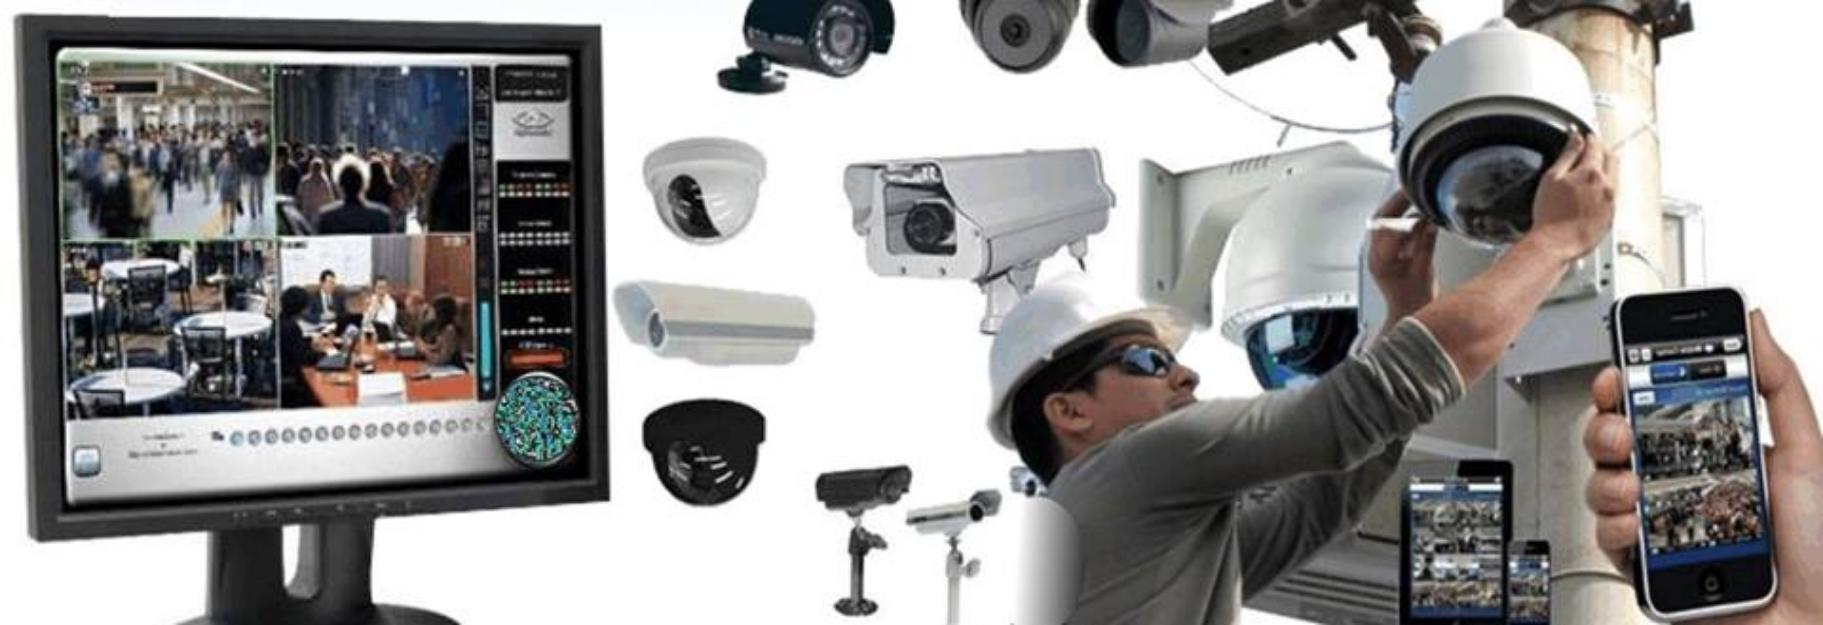 Curso de Instalación y Configuración de Camaras de Seguridad: CCTV